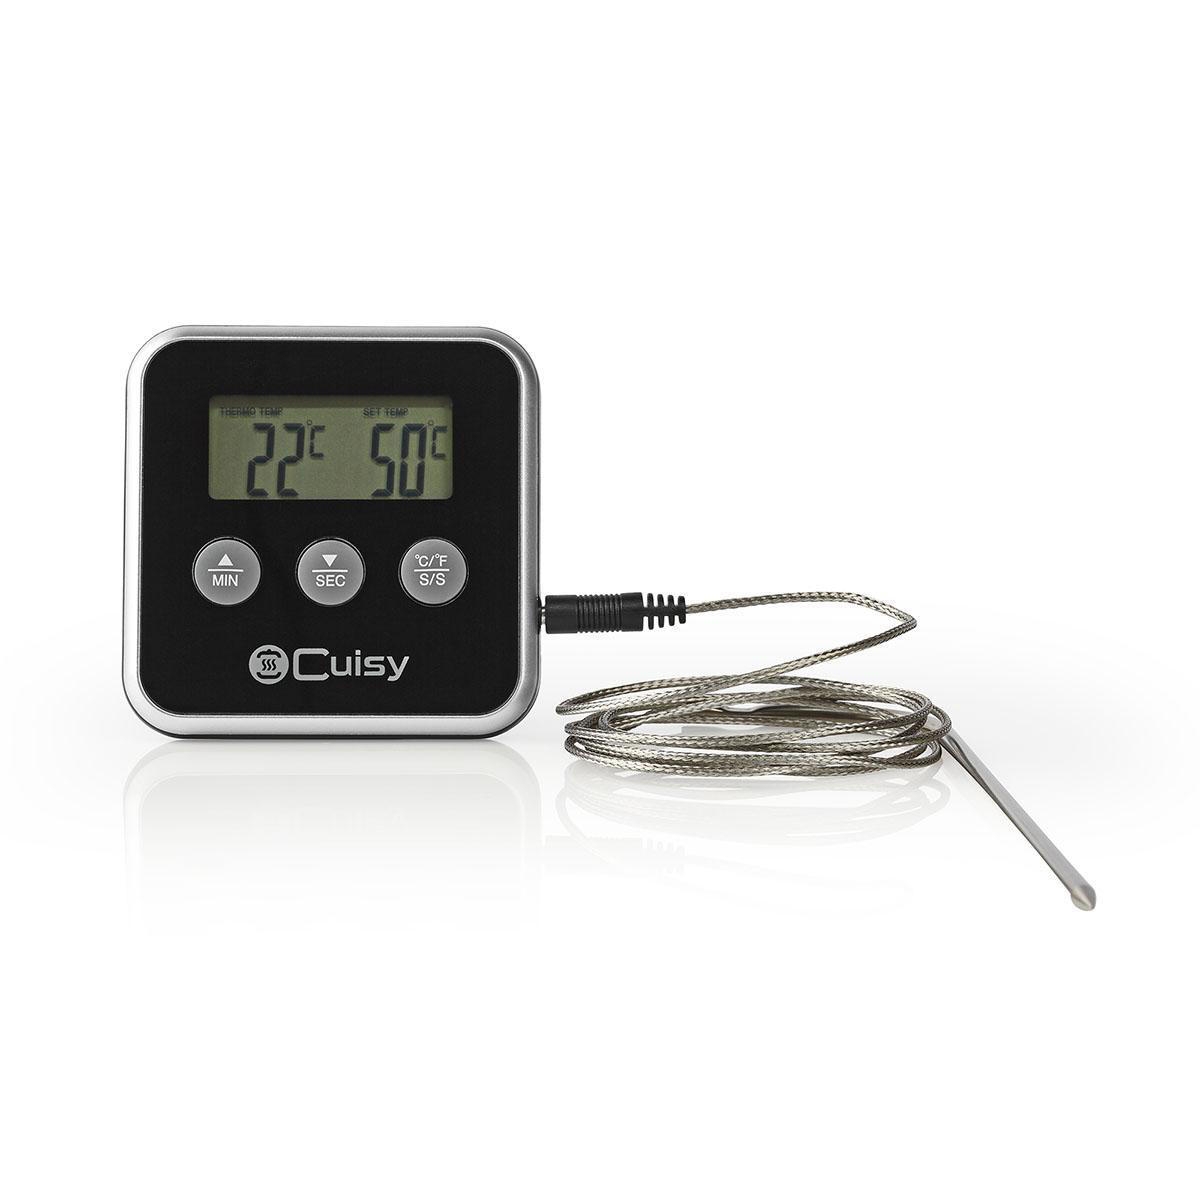 Hoofdstraat Verhogen Besnoeiing 250 °C | Zilver / Zwart (KATH105BK) - Vleesthermometer | Alarm / Timer |  LCD-Scherm | 0 - Rutten Elektroshop